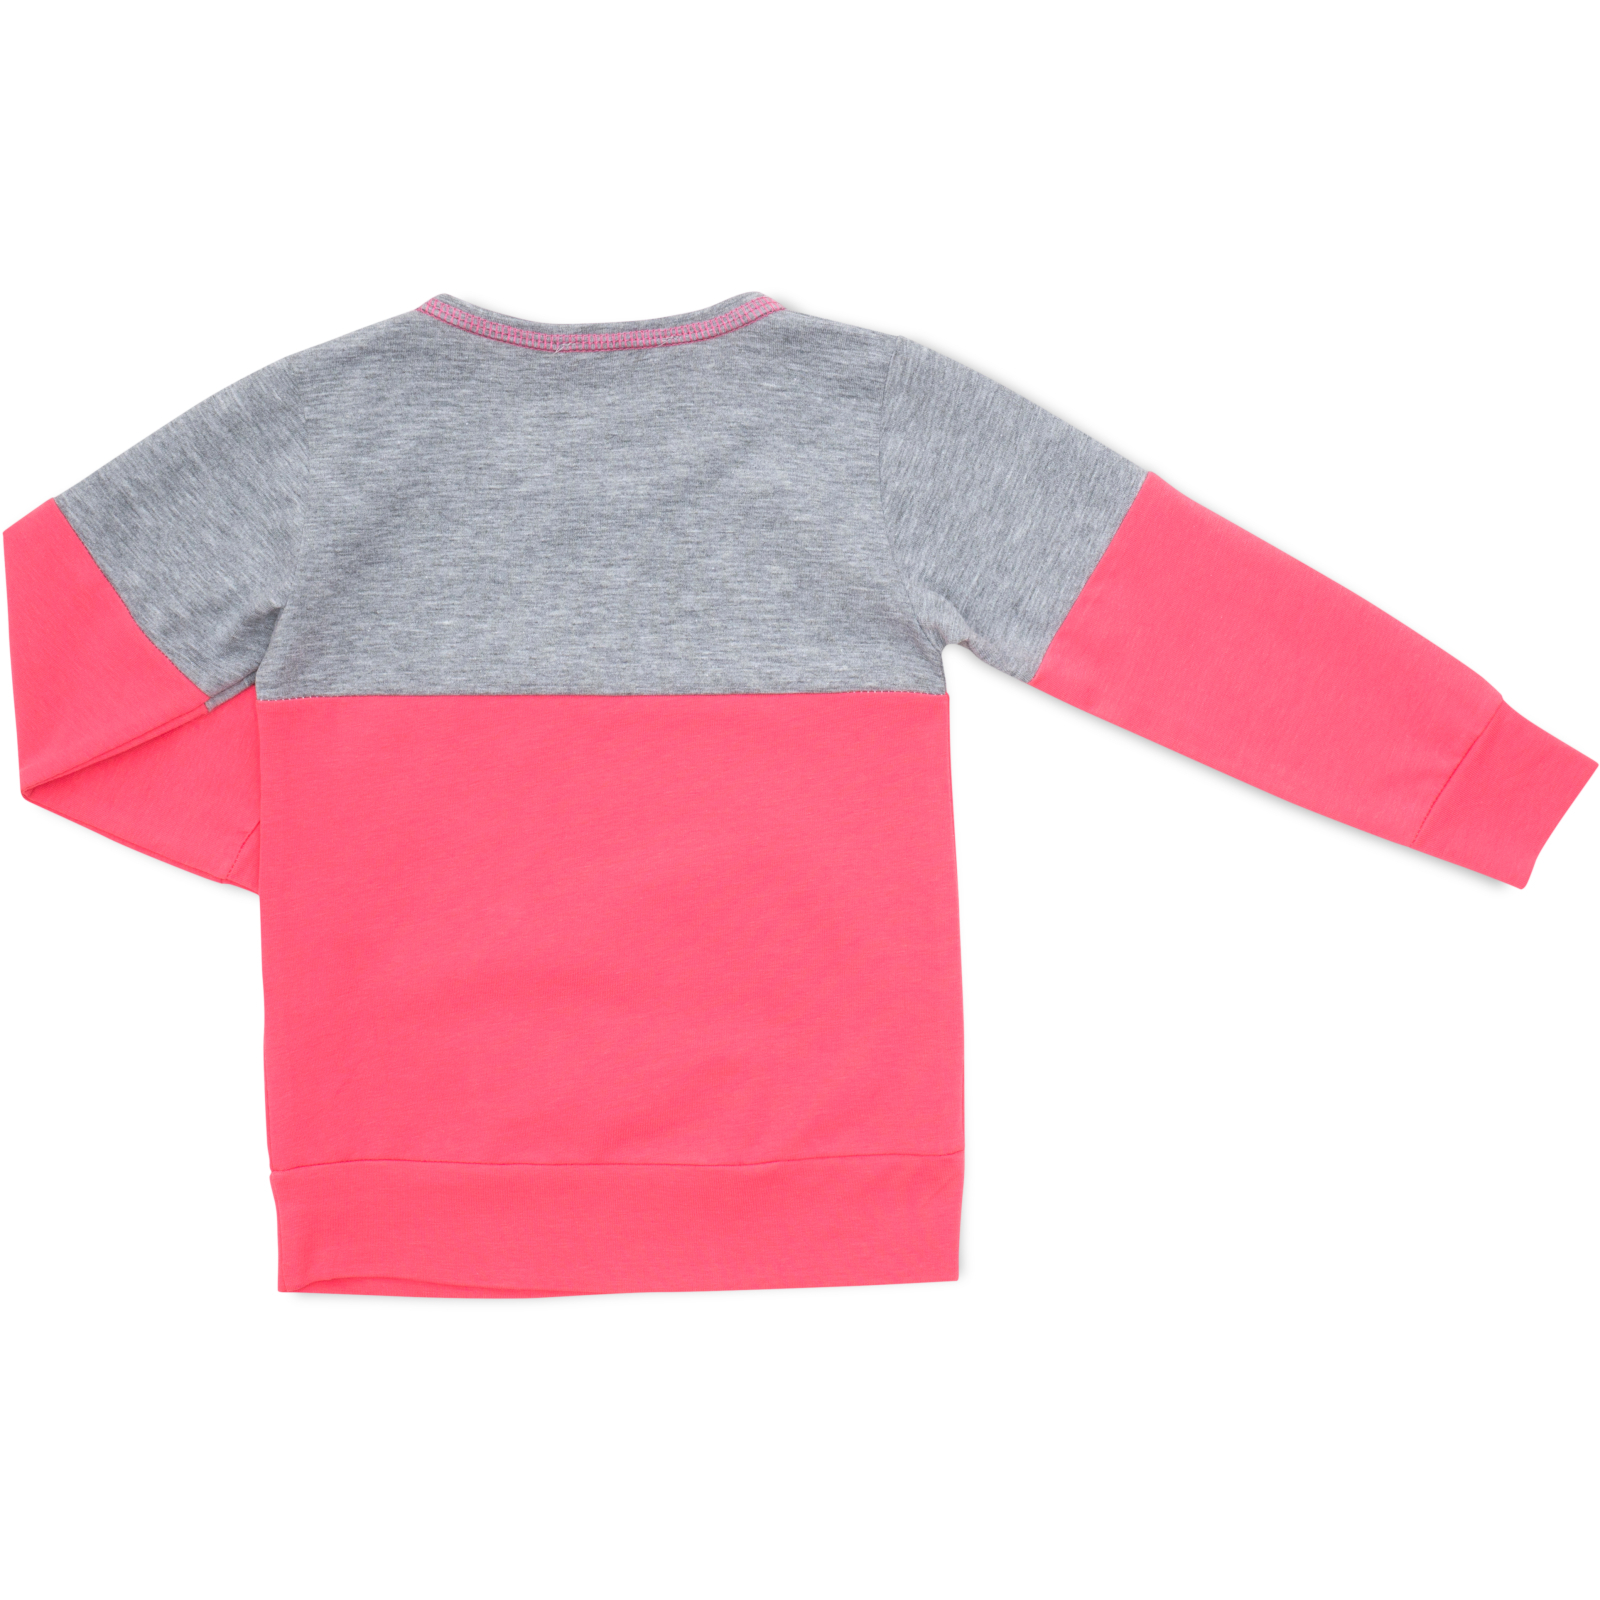 Пижама Matilda со звездочками (7167-98G-pink) изображение 5